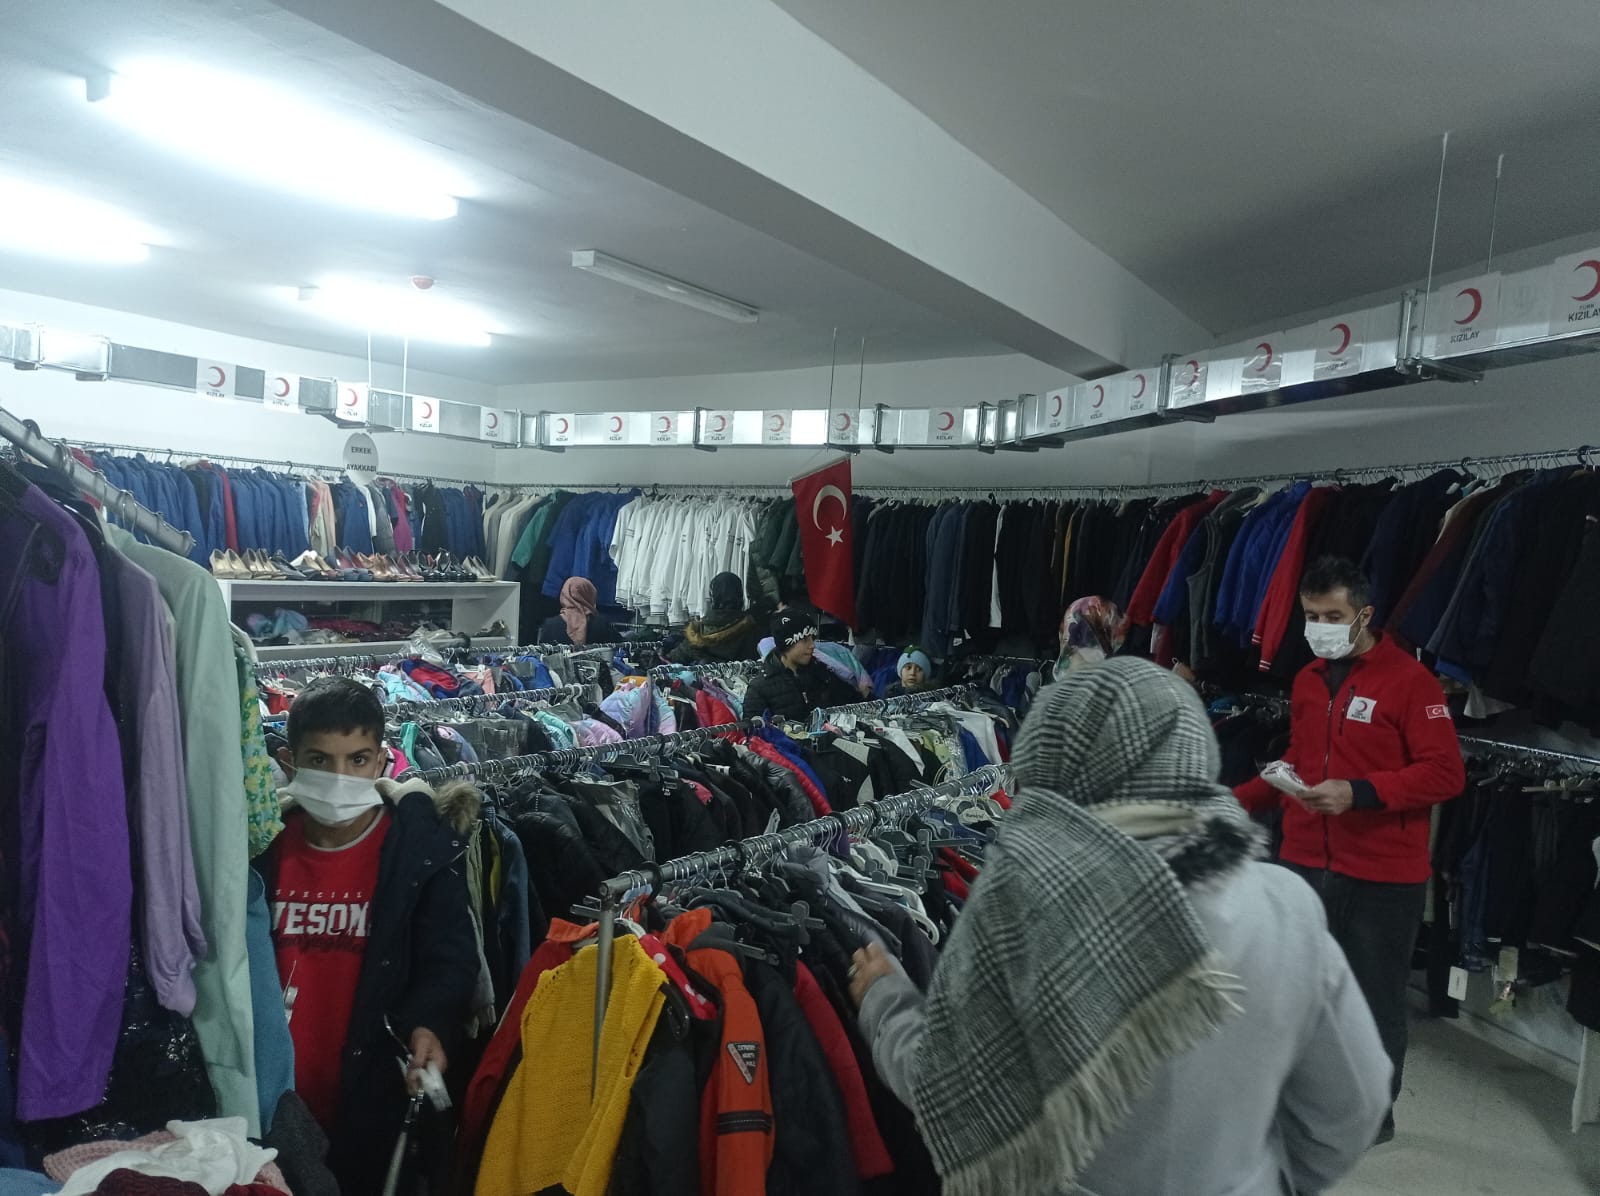 Türk Kızılay Elazığ şubesi olarak ihtiyaç sahiplerimiz için butik mağazamızda kıyafet dağıtımlarımıza devam ediyoruz🌙 (4)